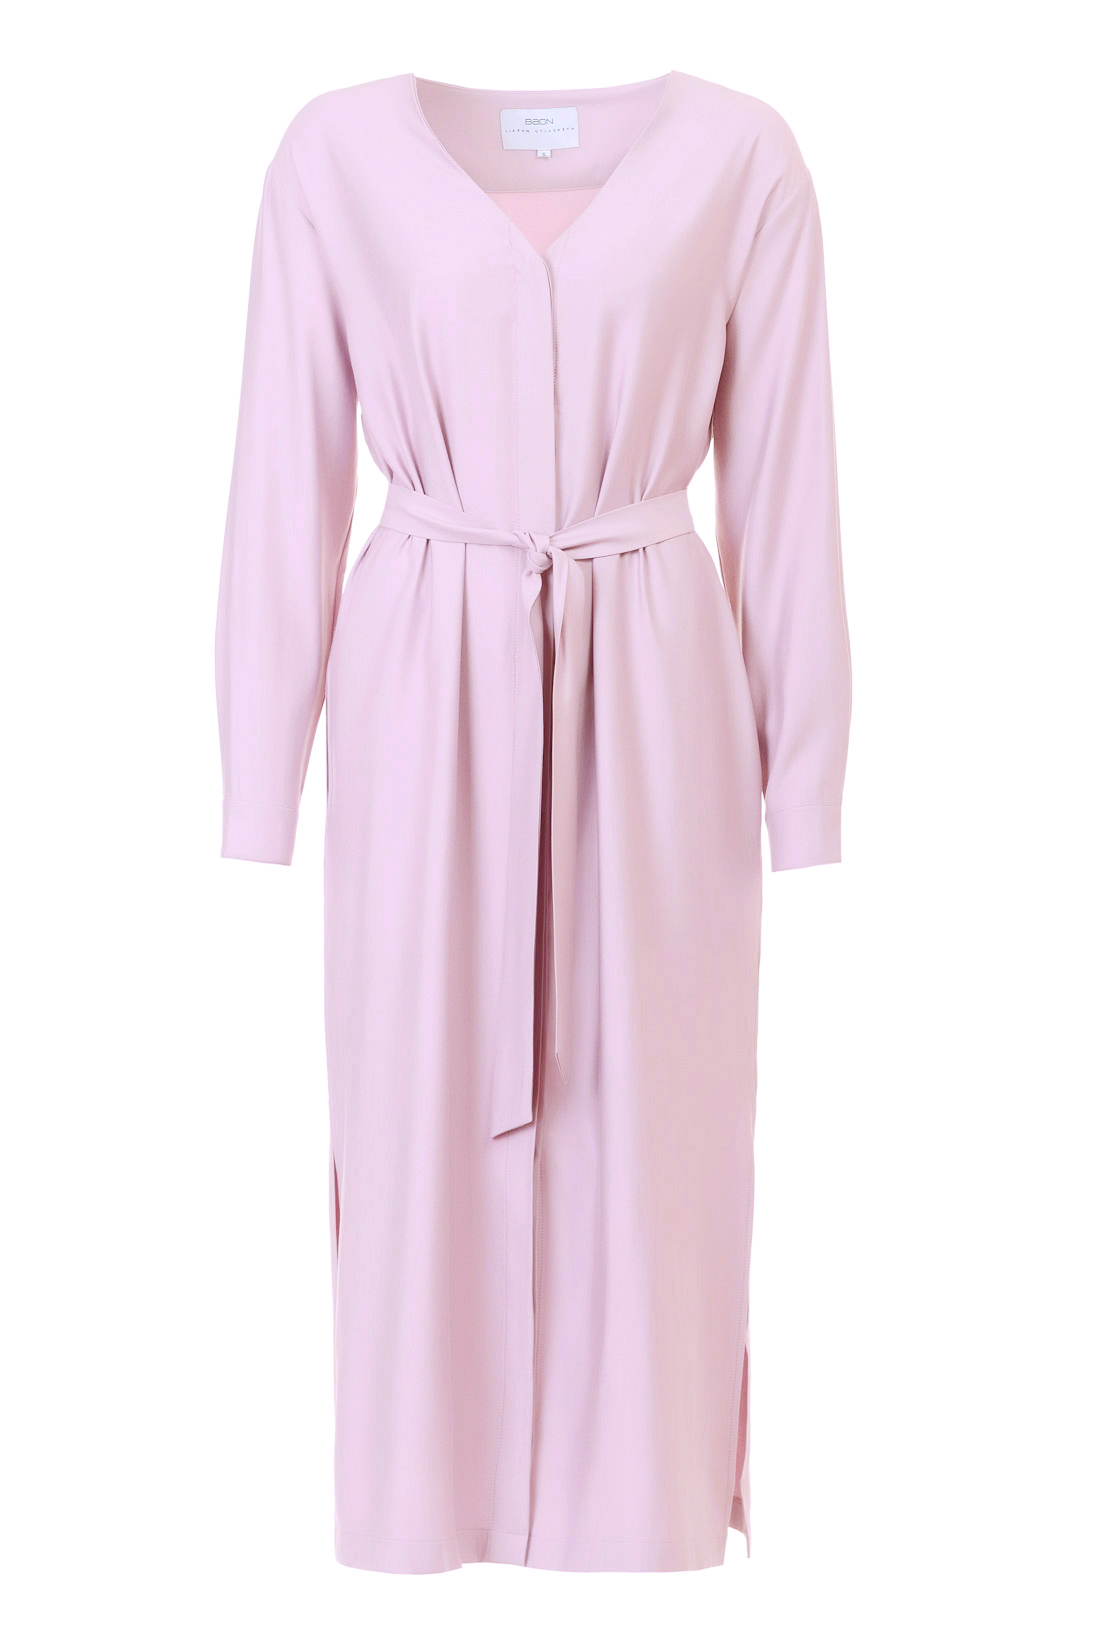 Платье с запахом (арт. baon B457106), размер S, цвет розовый Платье с запахом (арт. baon B457106) - фото 3